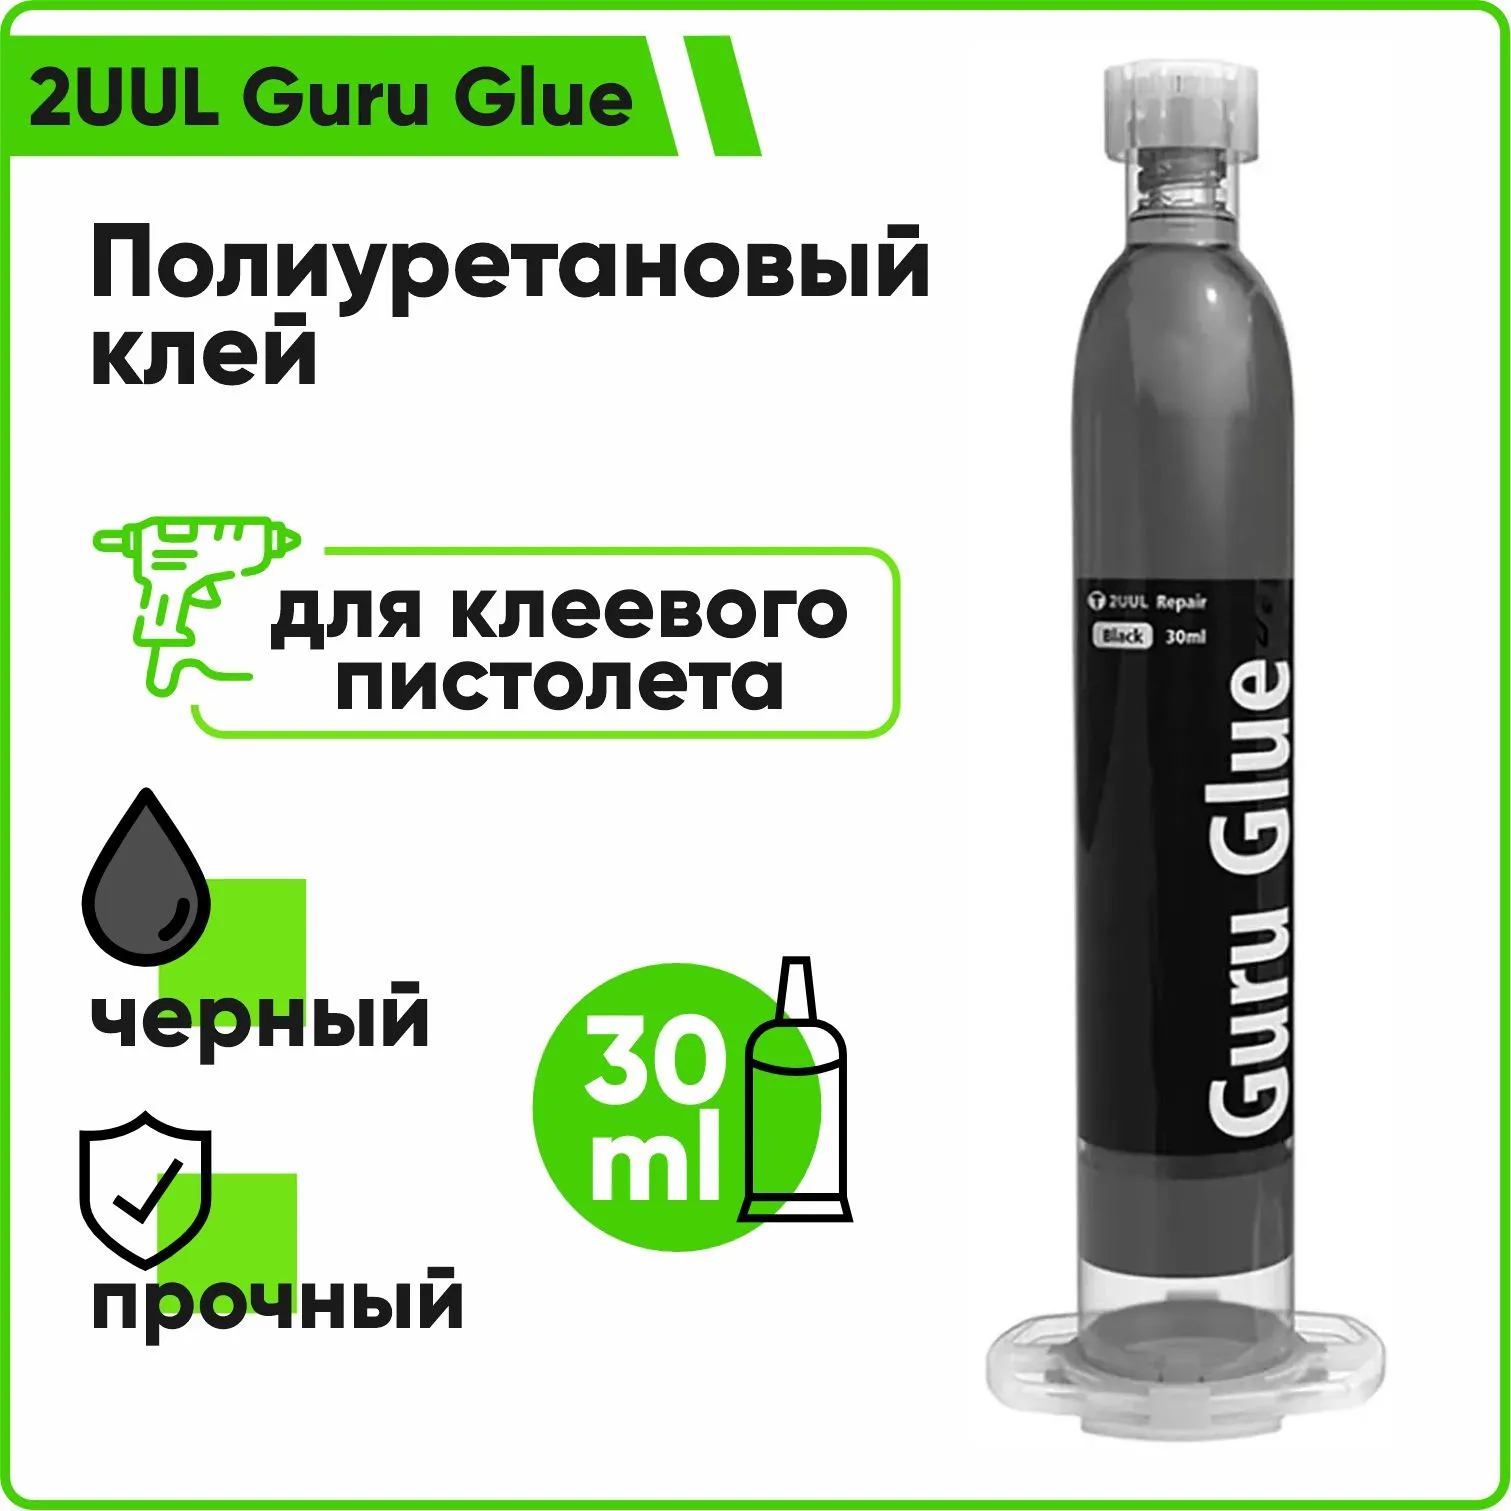 Полиуретановый клей 2UUL Guru Glue Soft Buffer Adhesive DA48 для клеевого пистолета 30мл (черный)